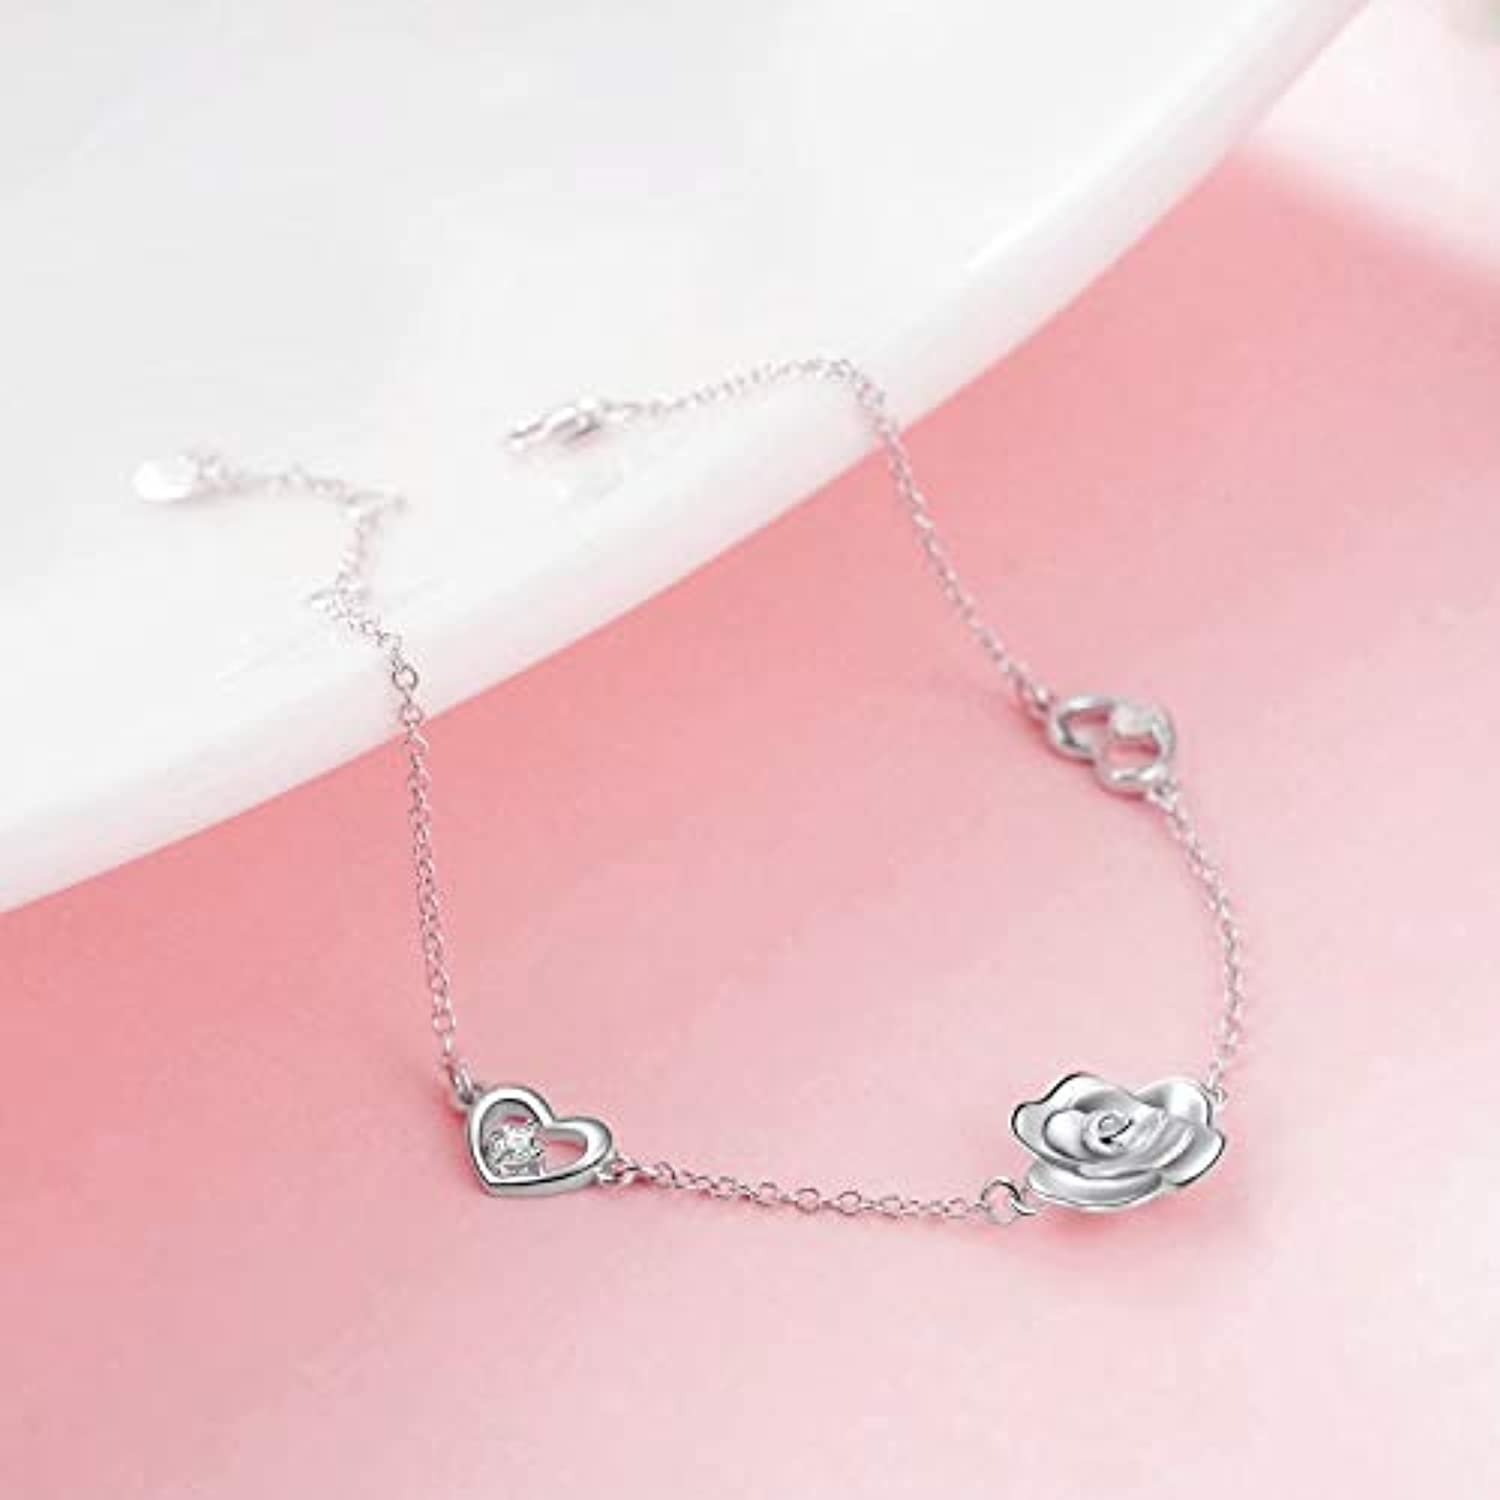 Rose Braceltes Sterling Silver Adjustable Rose Flower Love Heart Chain Link Bracelets Gifts for Women Teen Girls